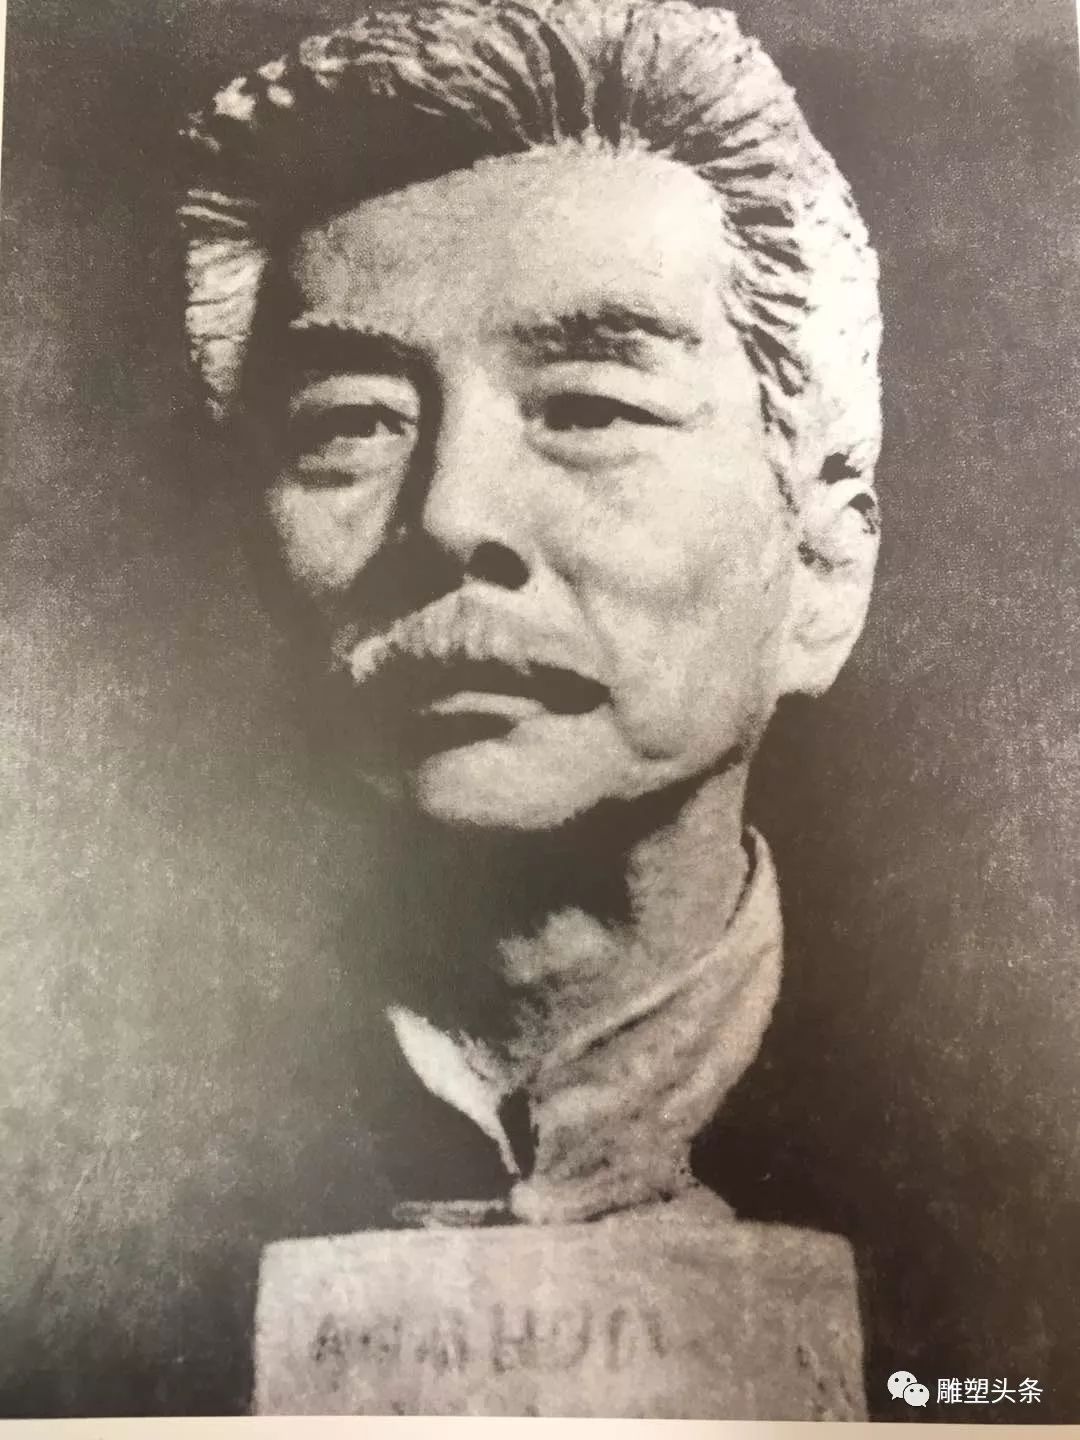 《鲁迅头像》 陈道坦(1919-2014)